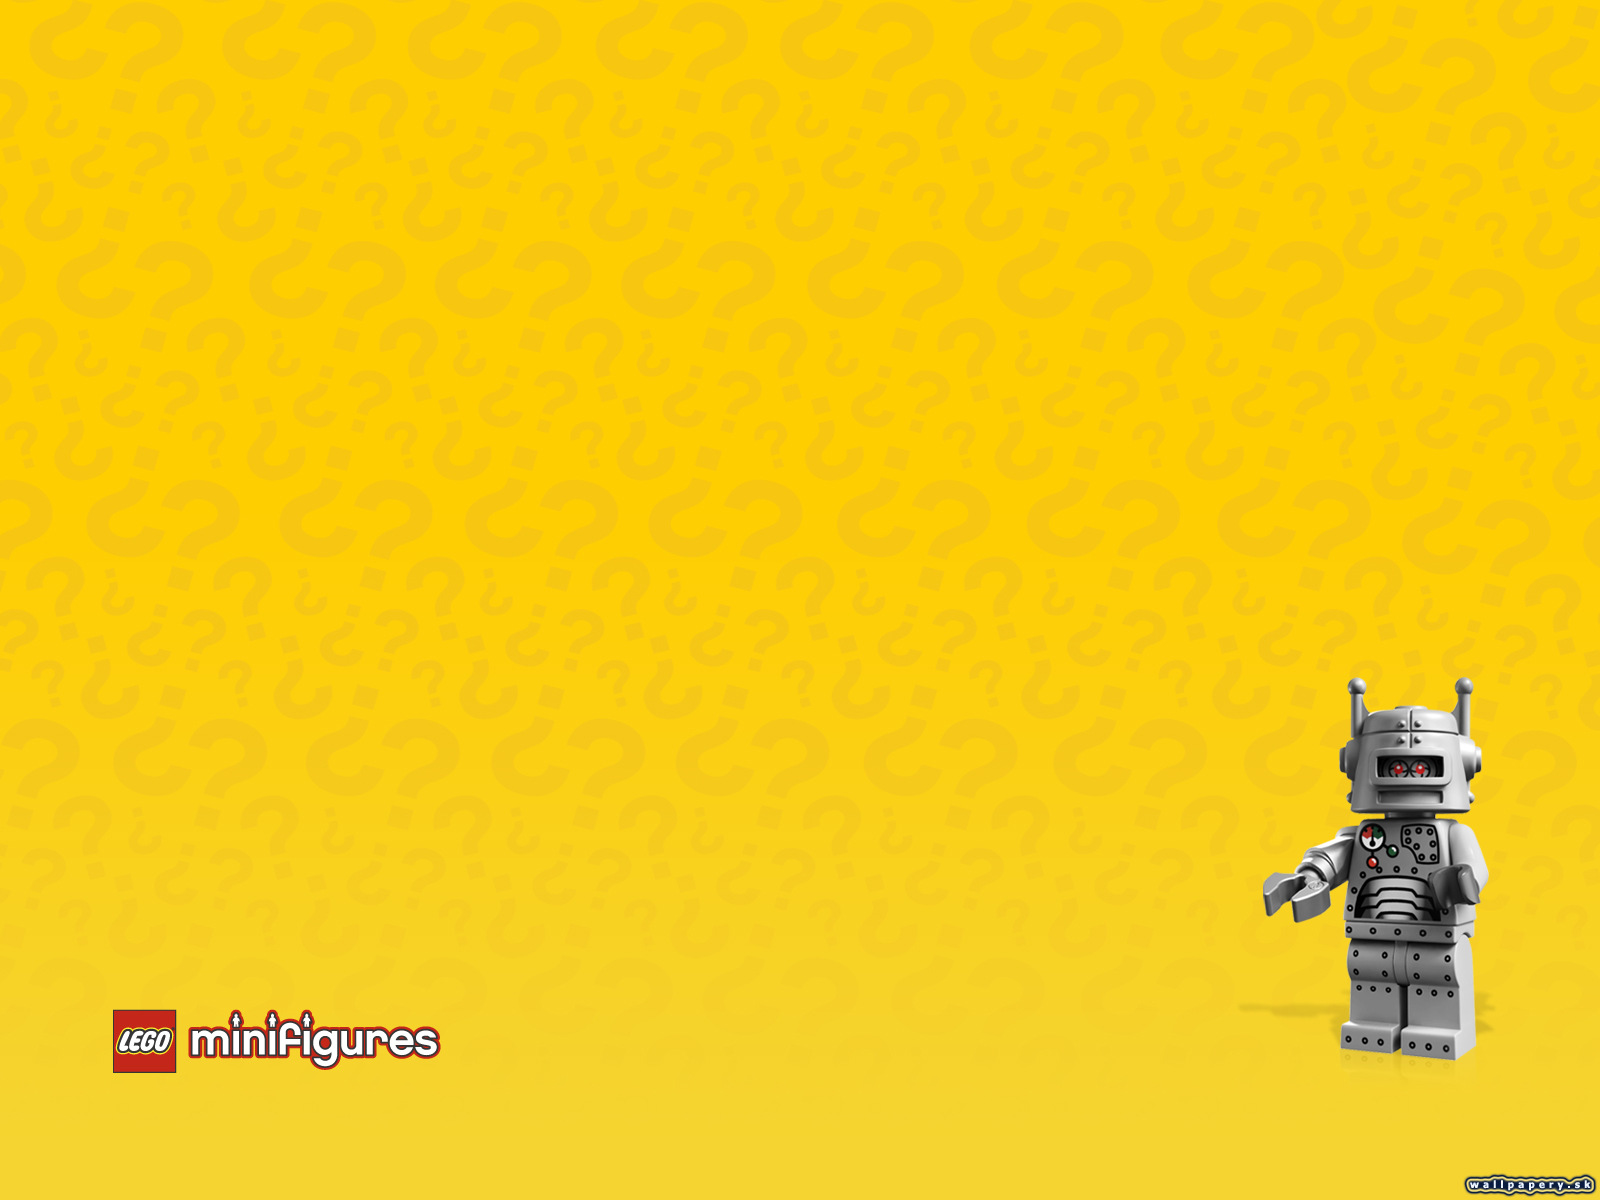 LEGO Minifigures Online - wallpaper 42